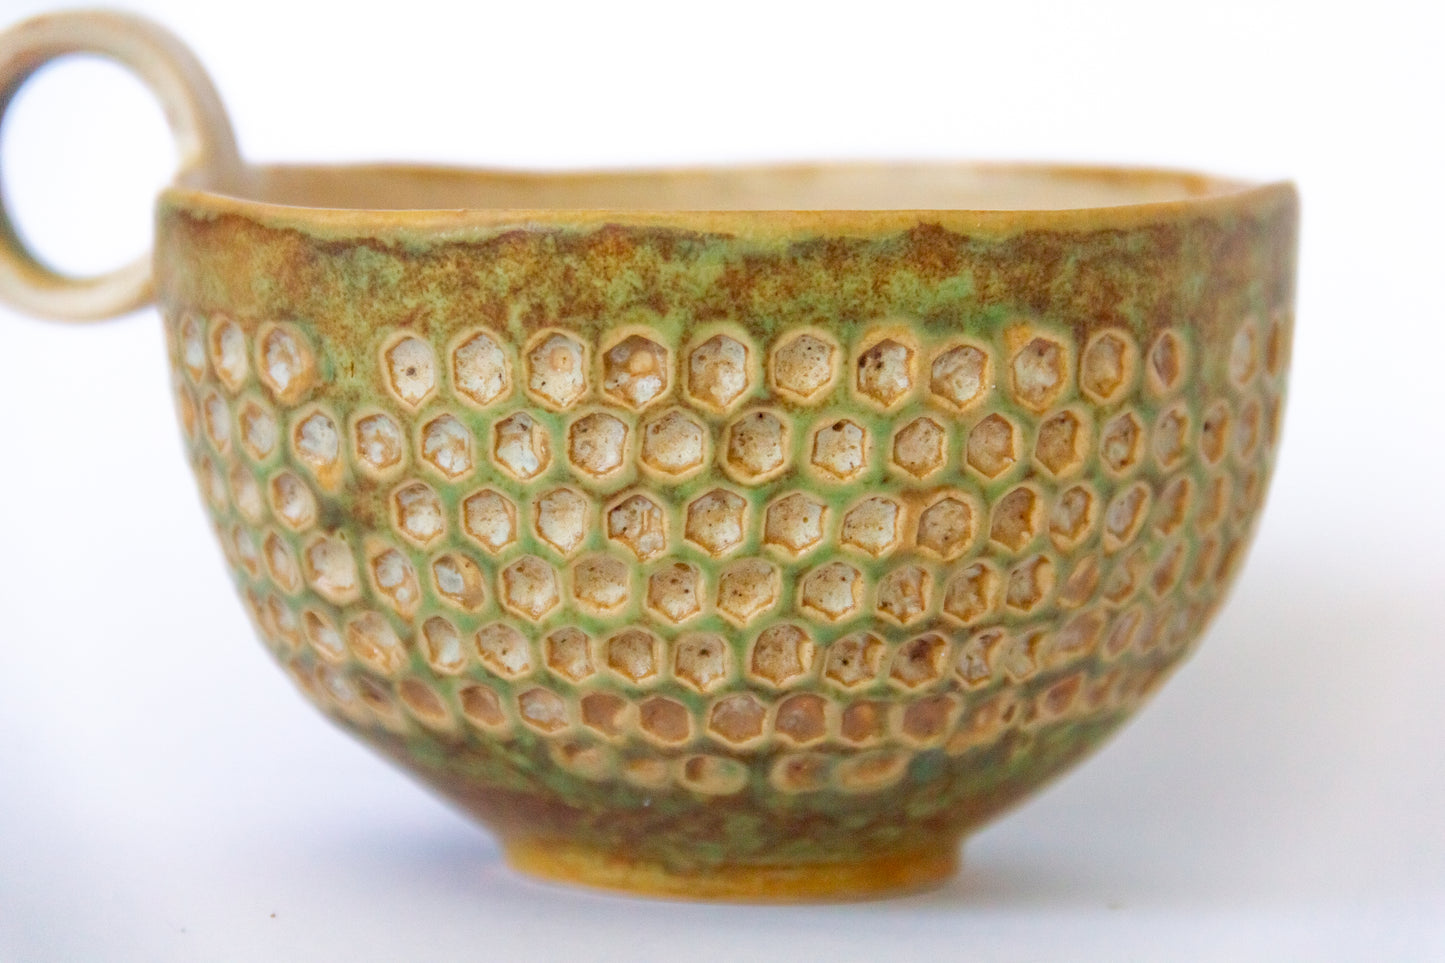 Kubek ceramiczny ze wzorem w kolorze beżowo-zielonym z plamkami